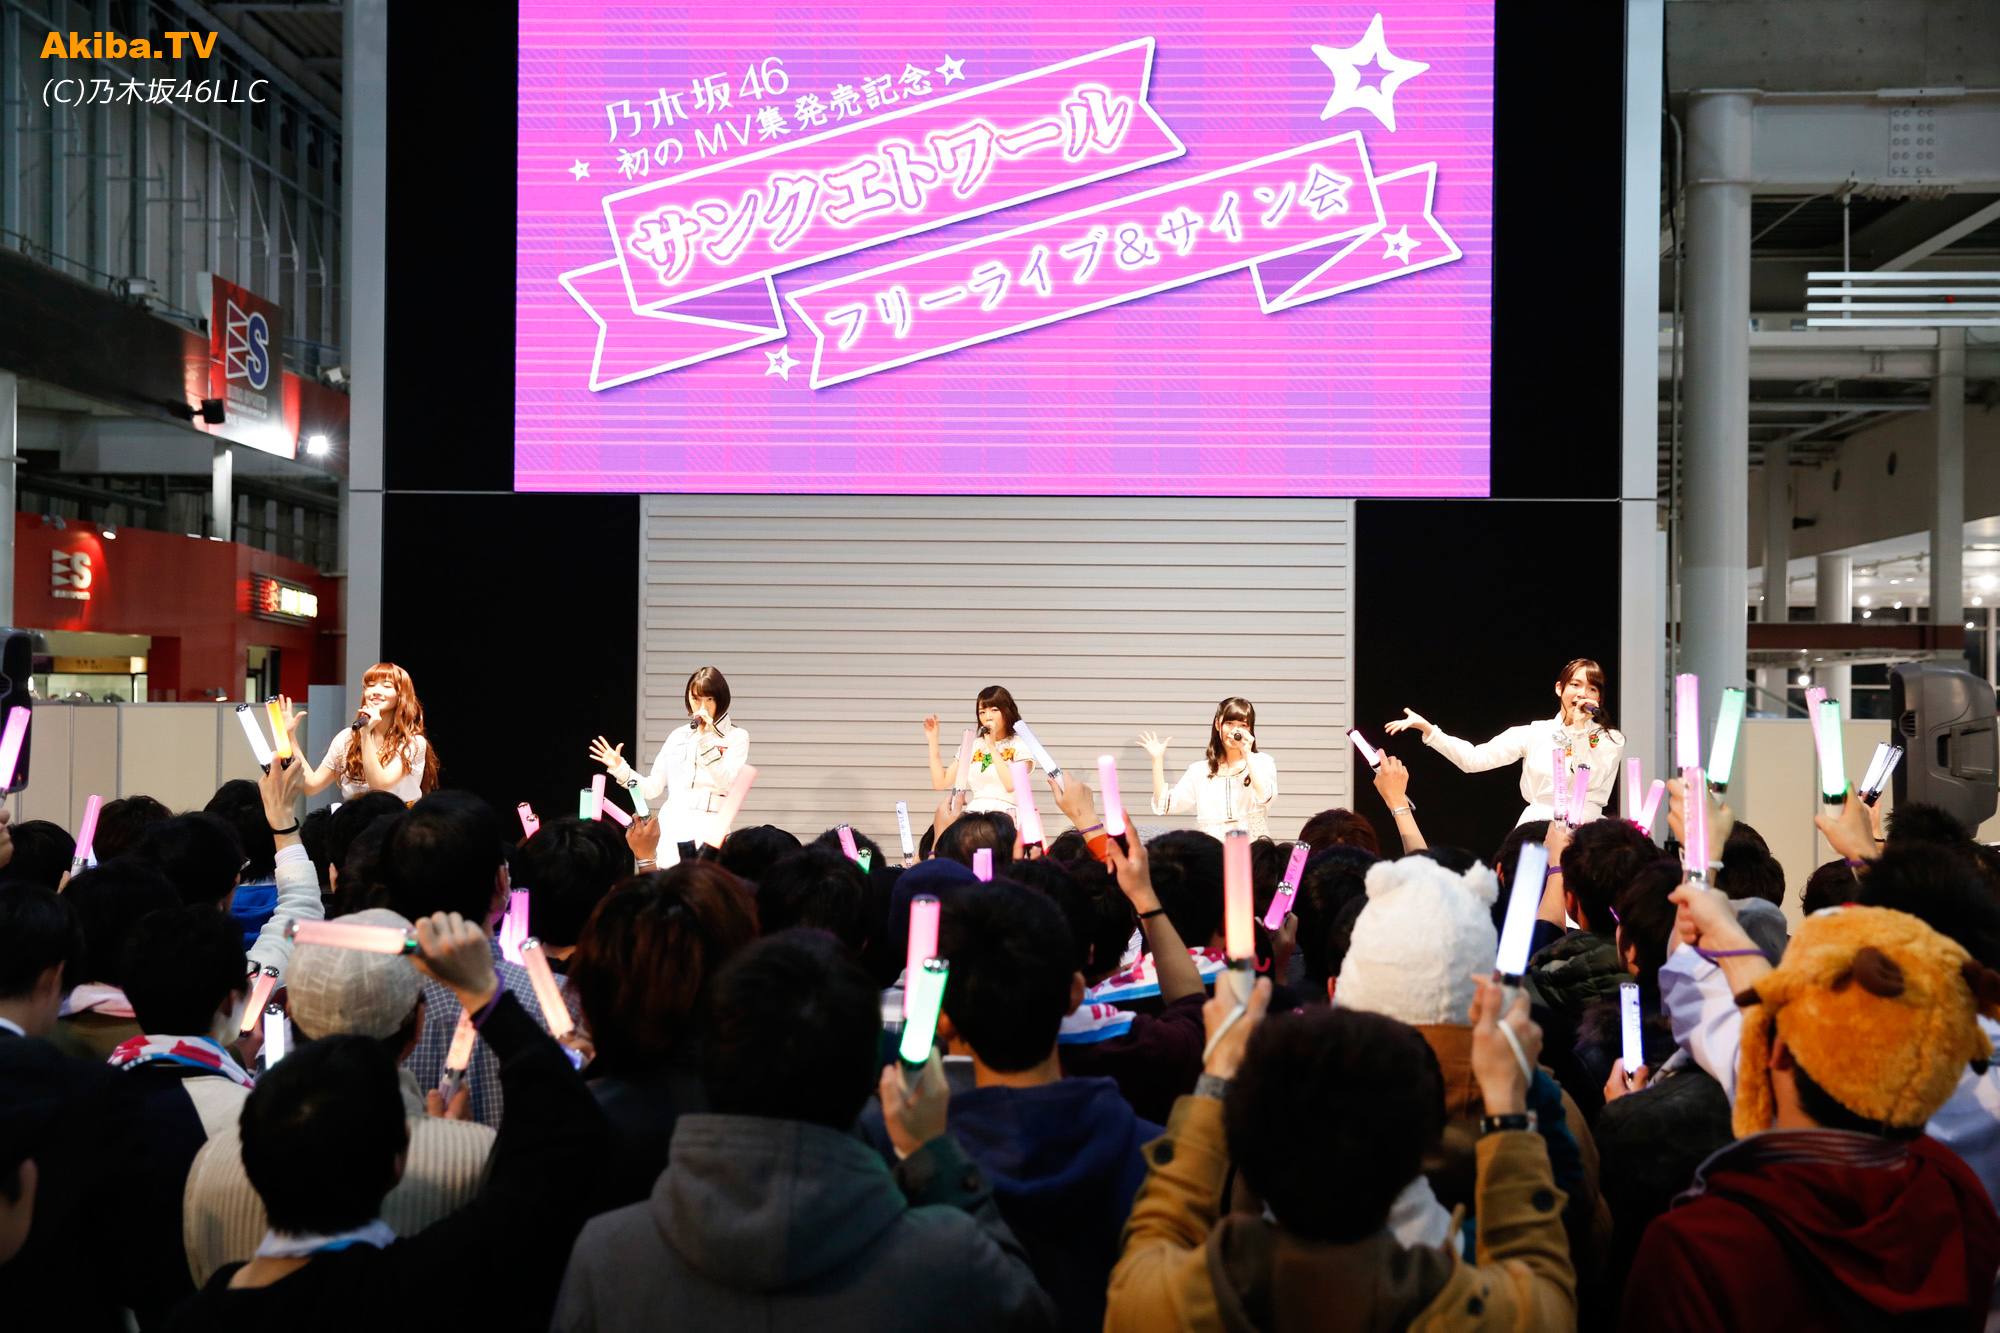 乃木坂46 新ユニット サンクエトワール がフリーライブを開催 Akiba Tv